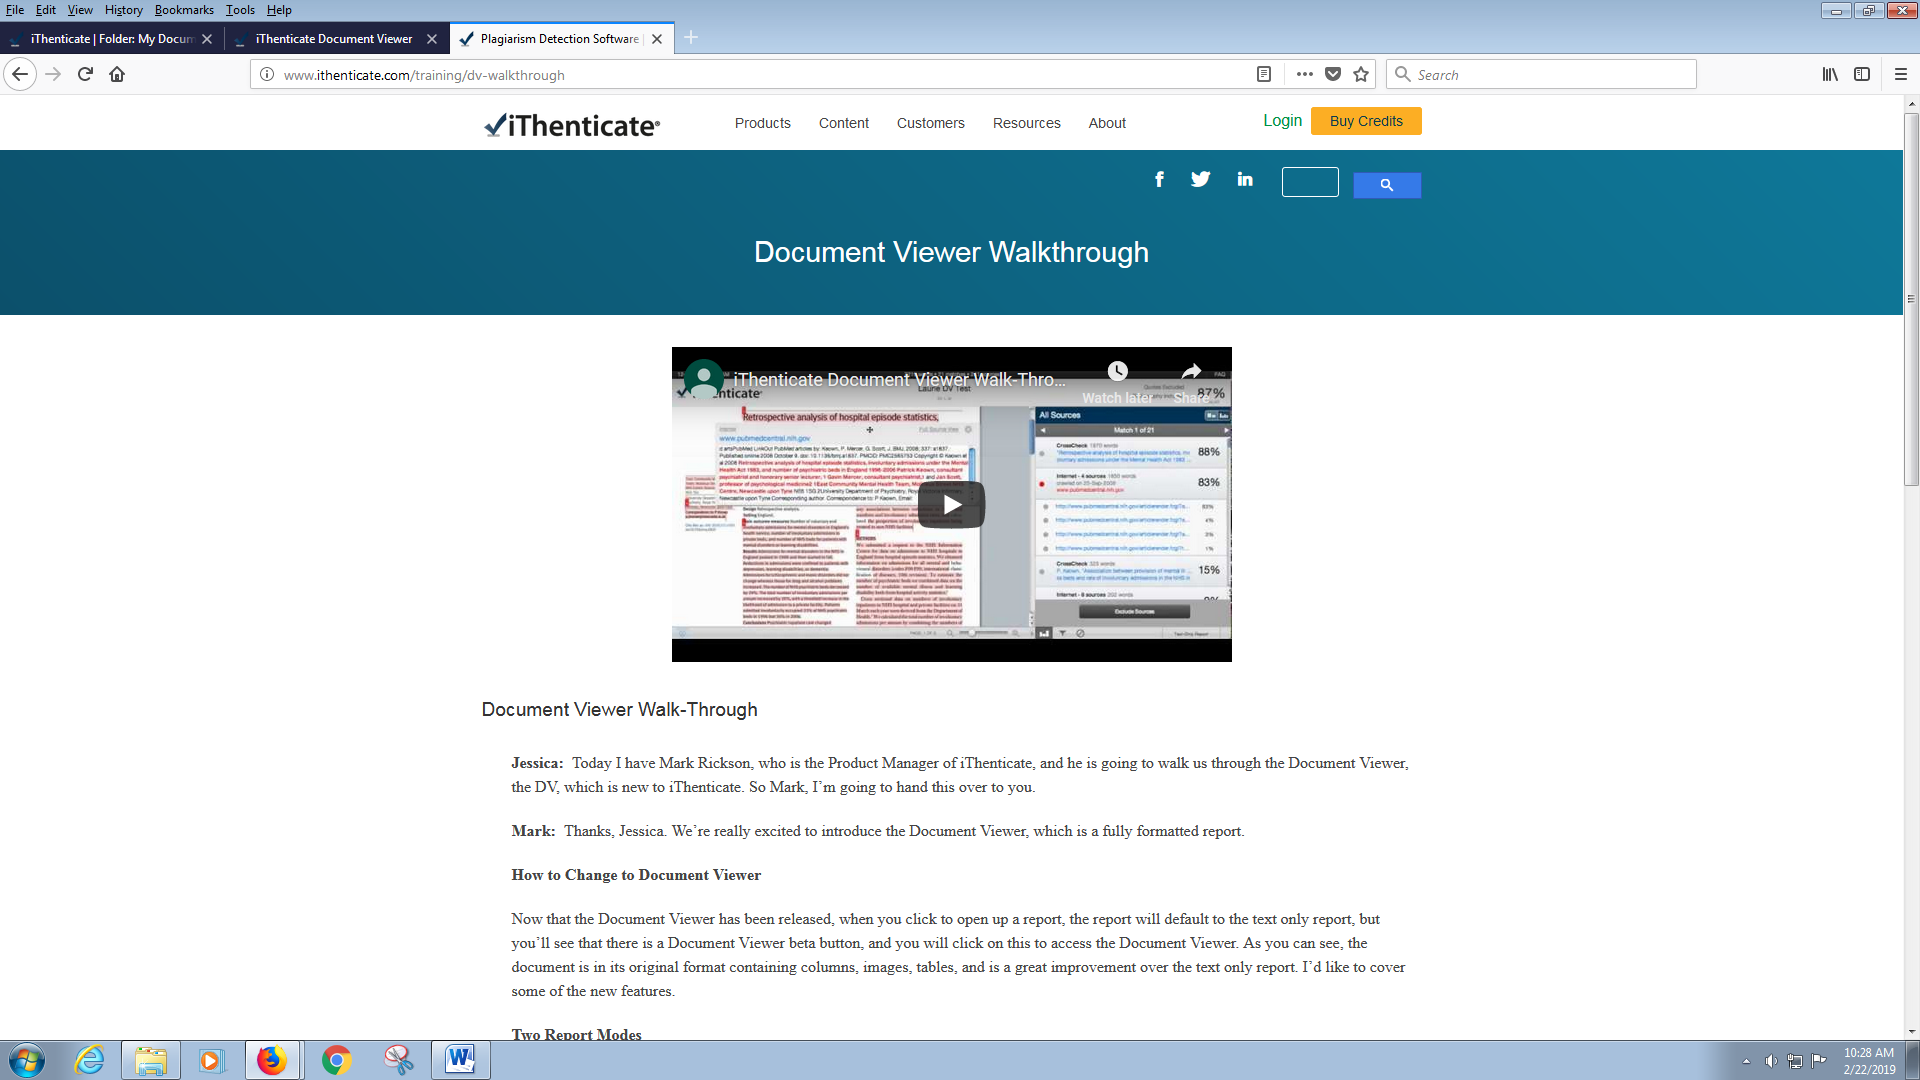 Document Viewer Walkthrough